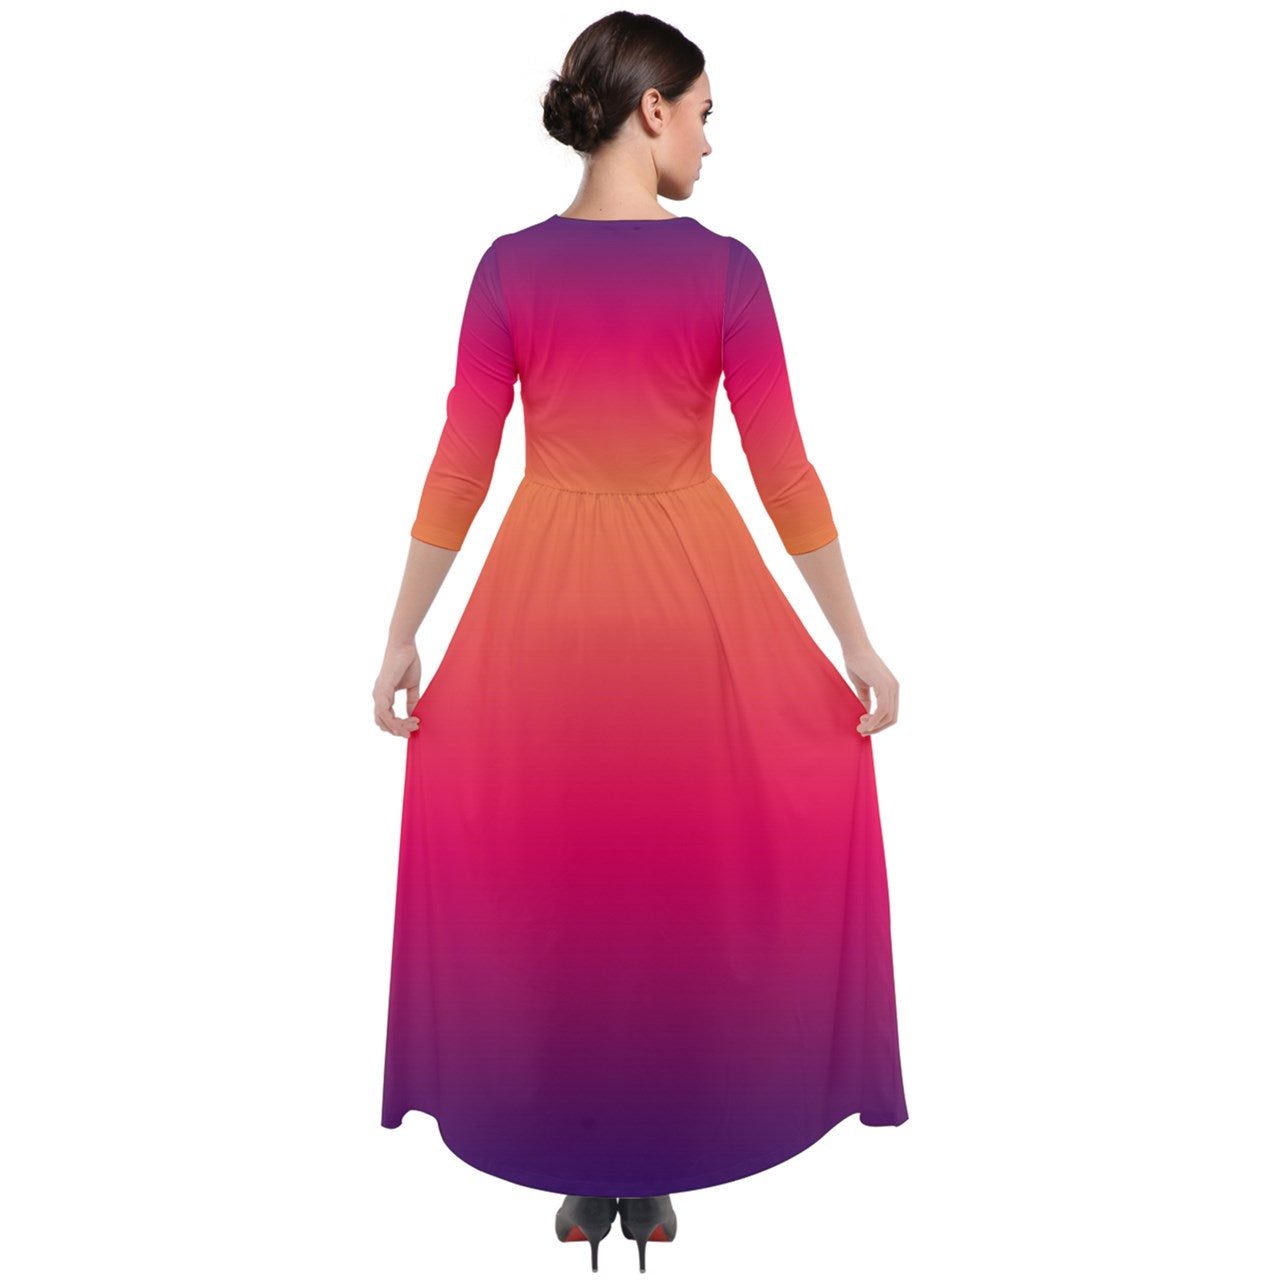 Velour Maxi Dress with 3/4 Sleeve, Fall Dress, Winter Dress, Autumn Dress